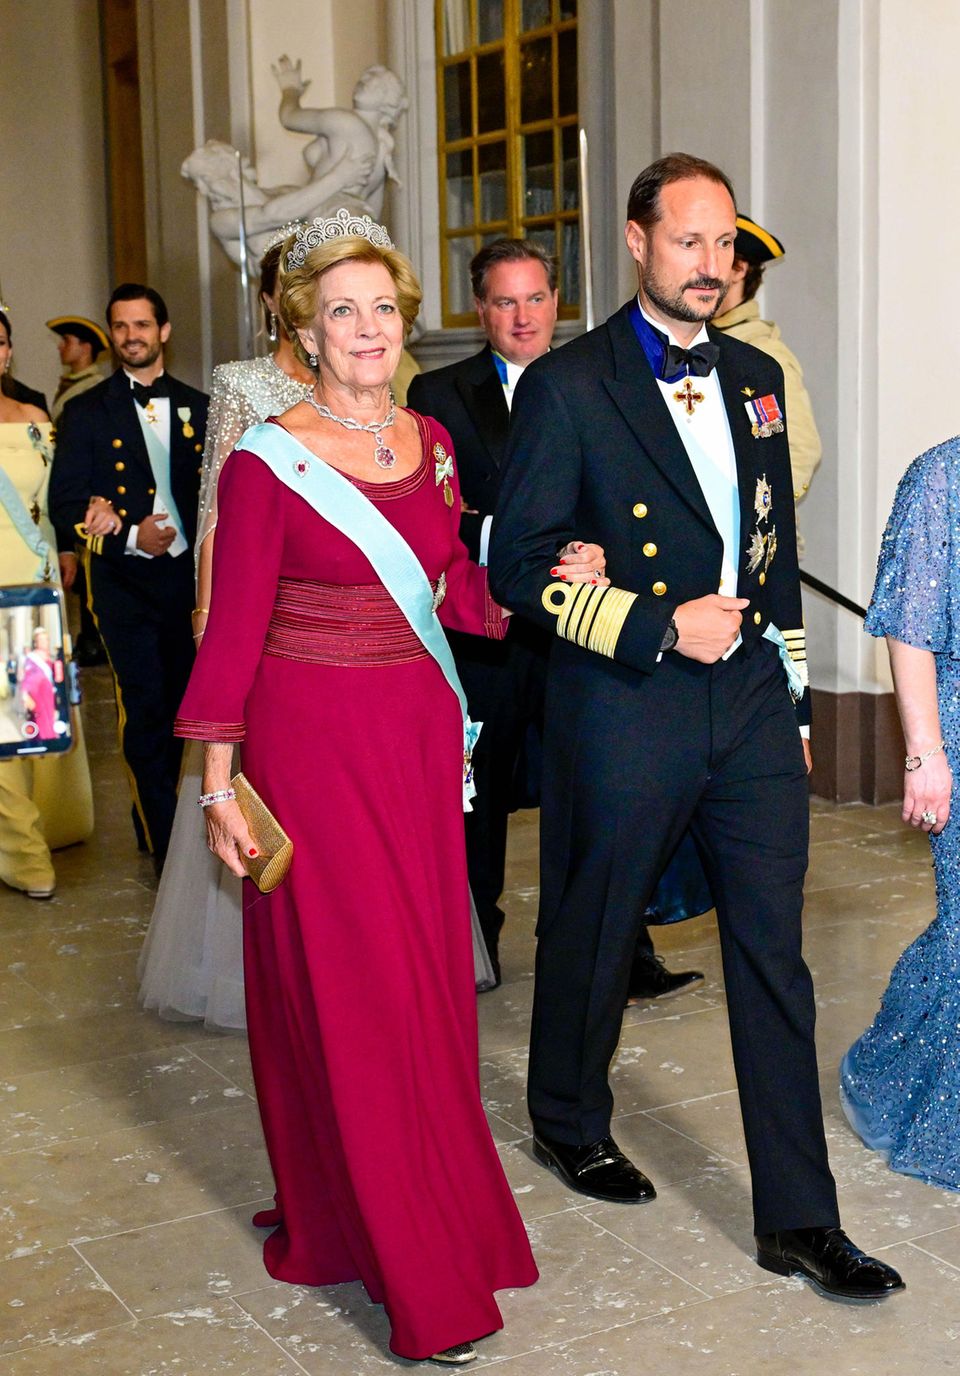 Am Abend finden sich dann alle zum Jubiläumsbankett im Königlichen Schloss zu Ehren König Carl Gustafs ein. Prinz Haakon erscheint am Arm von Königin Anne-Marie von Griechenland. Seine Frau Prinzessin Mette-Marit hatte auf Anraten ihres Arztes kurzfristig absagen müssen.